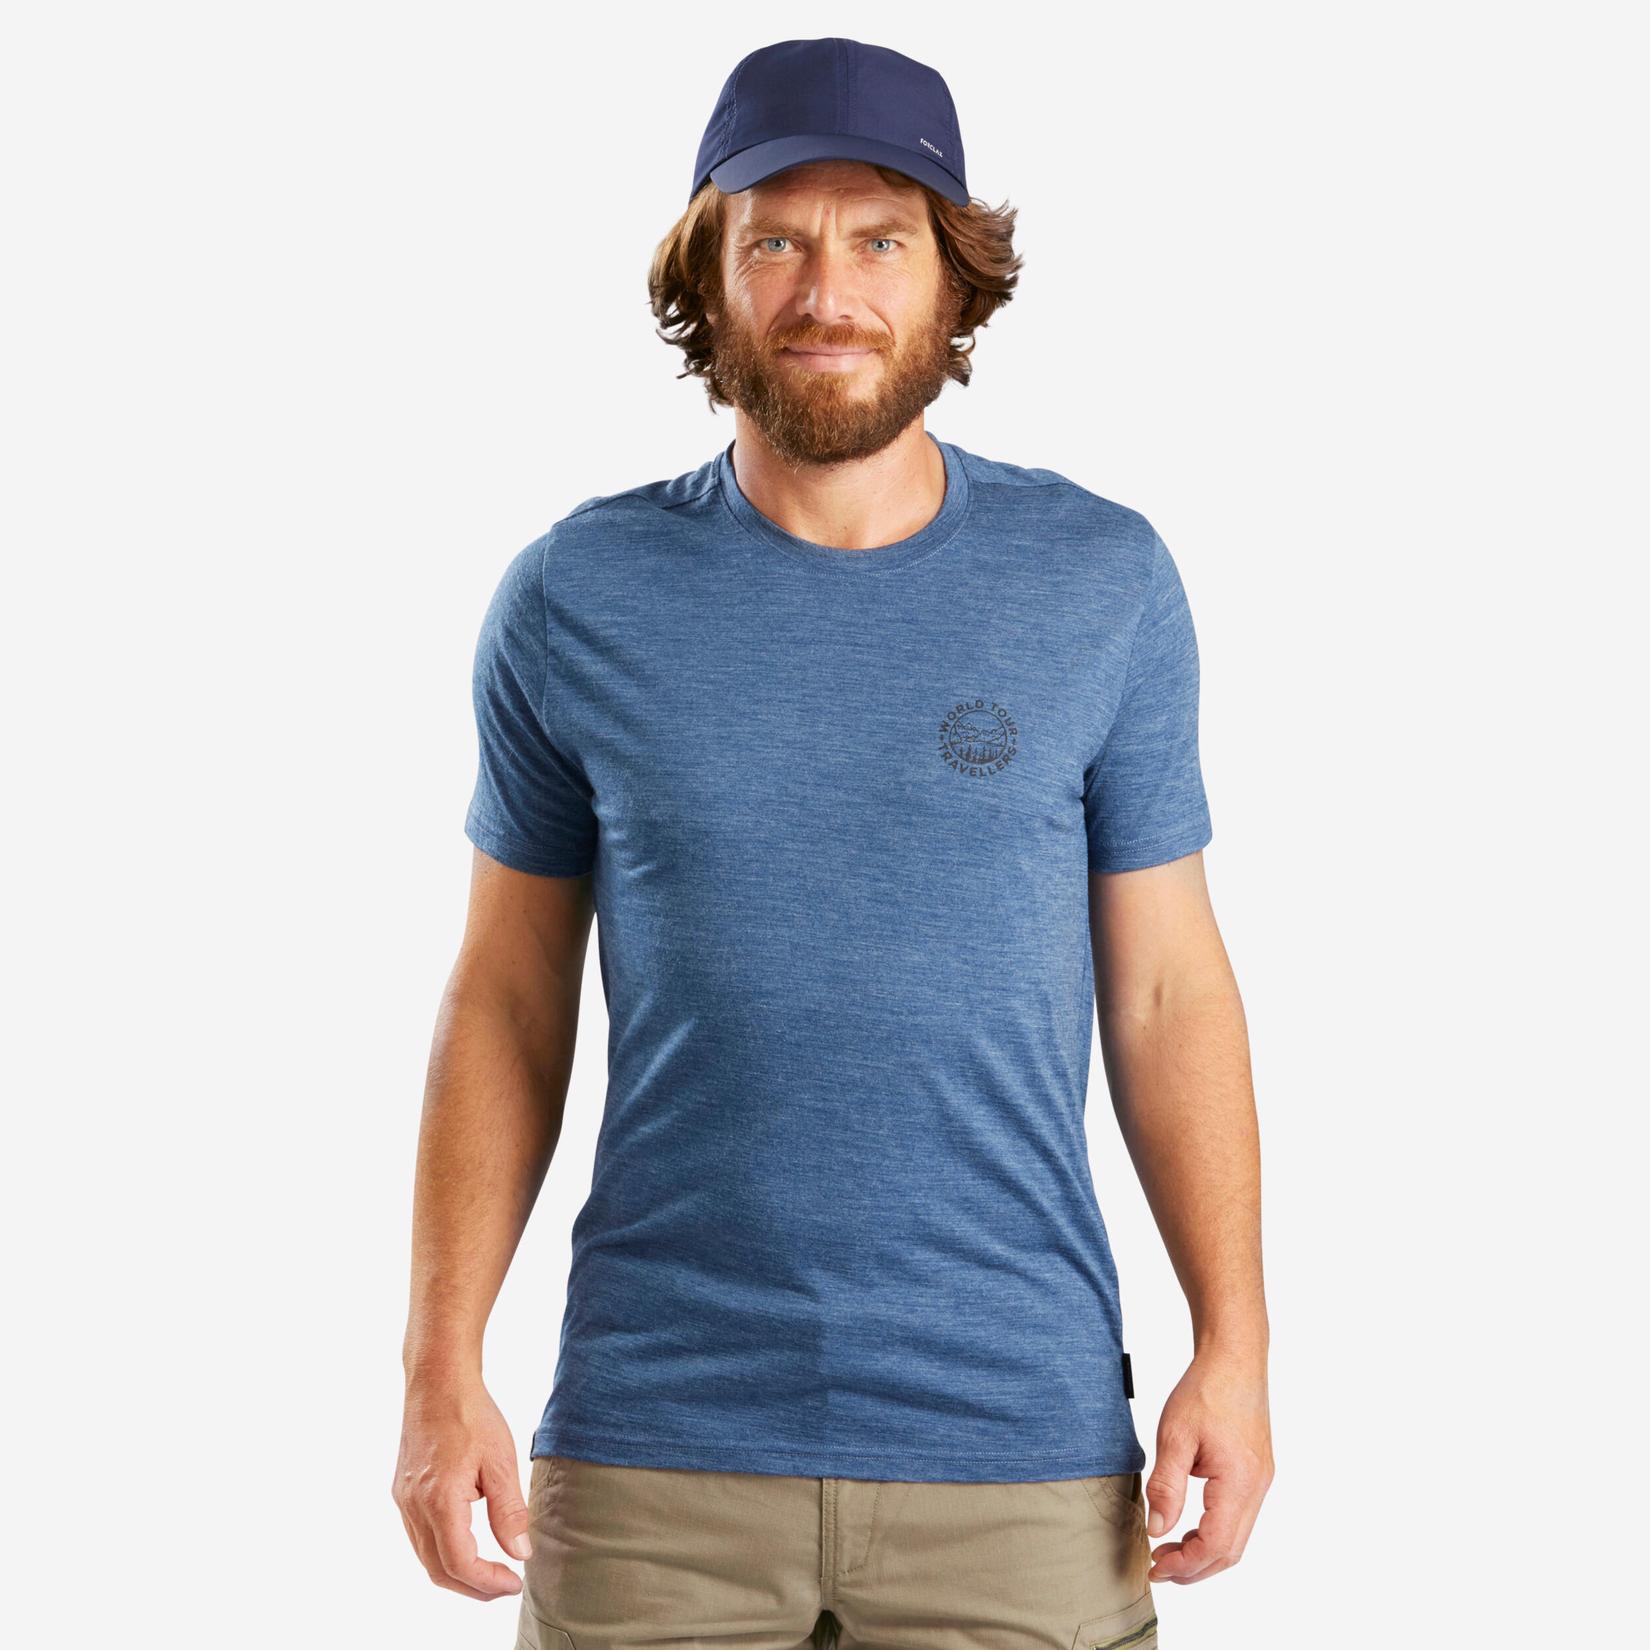 T-shirt i merinoull för vandring och resor - TRAVEL 500 - herr grå för 249 kr på Decathlon